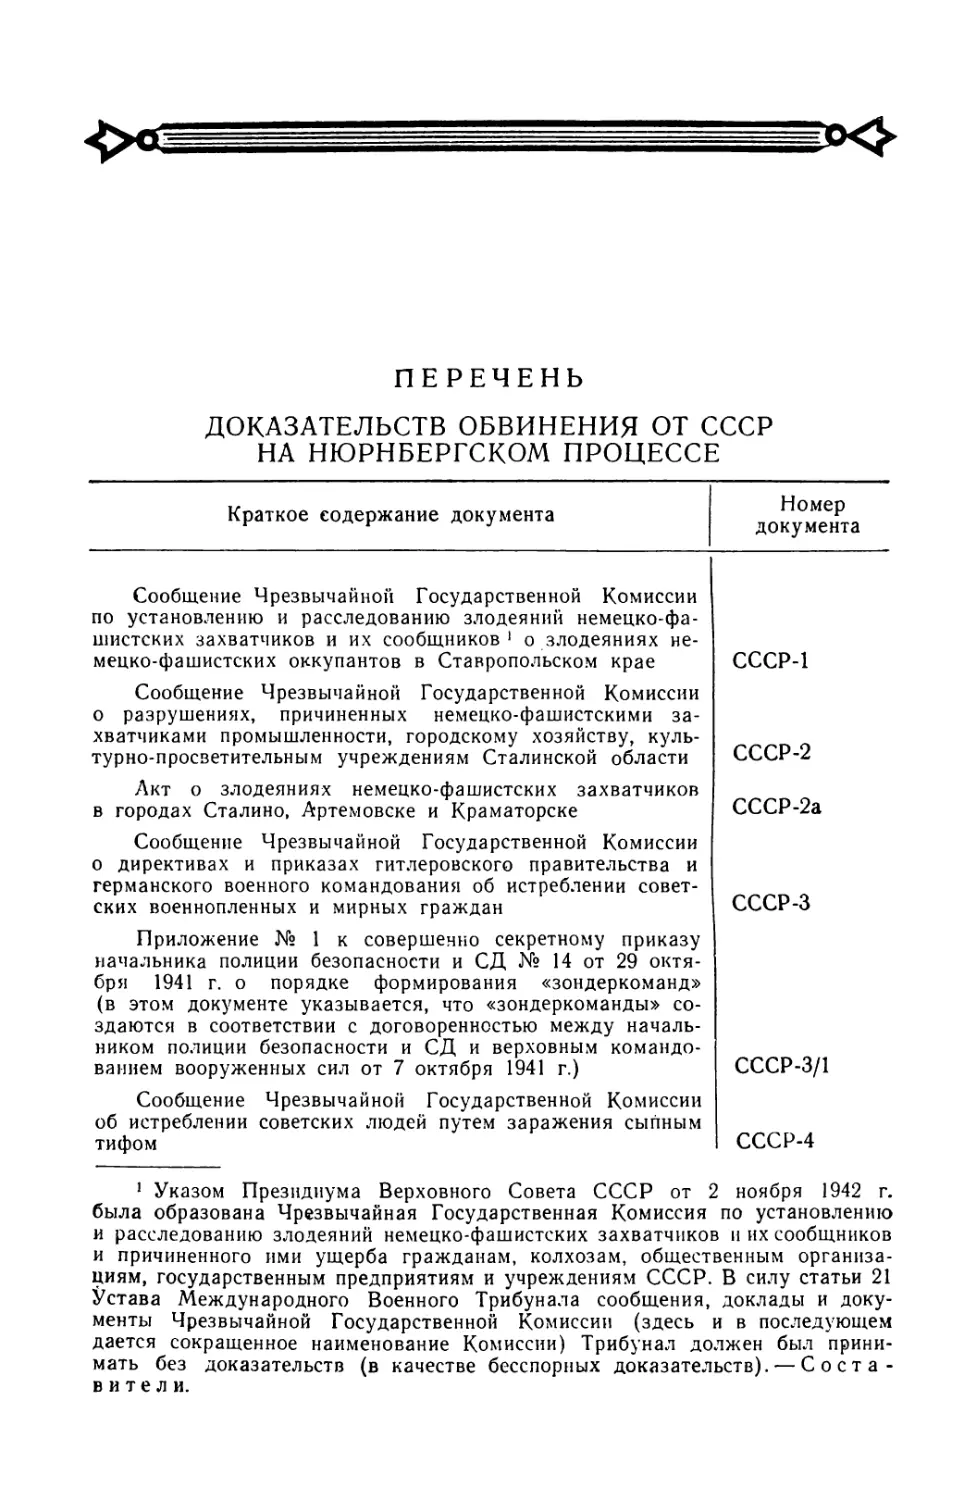 Перечень доказательств обвинения от СССР на Нюрнбергском процессе